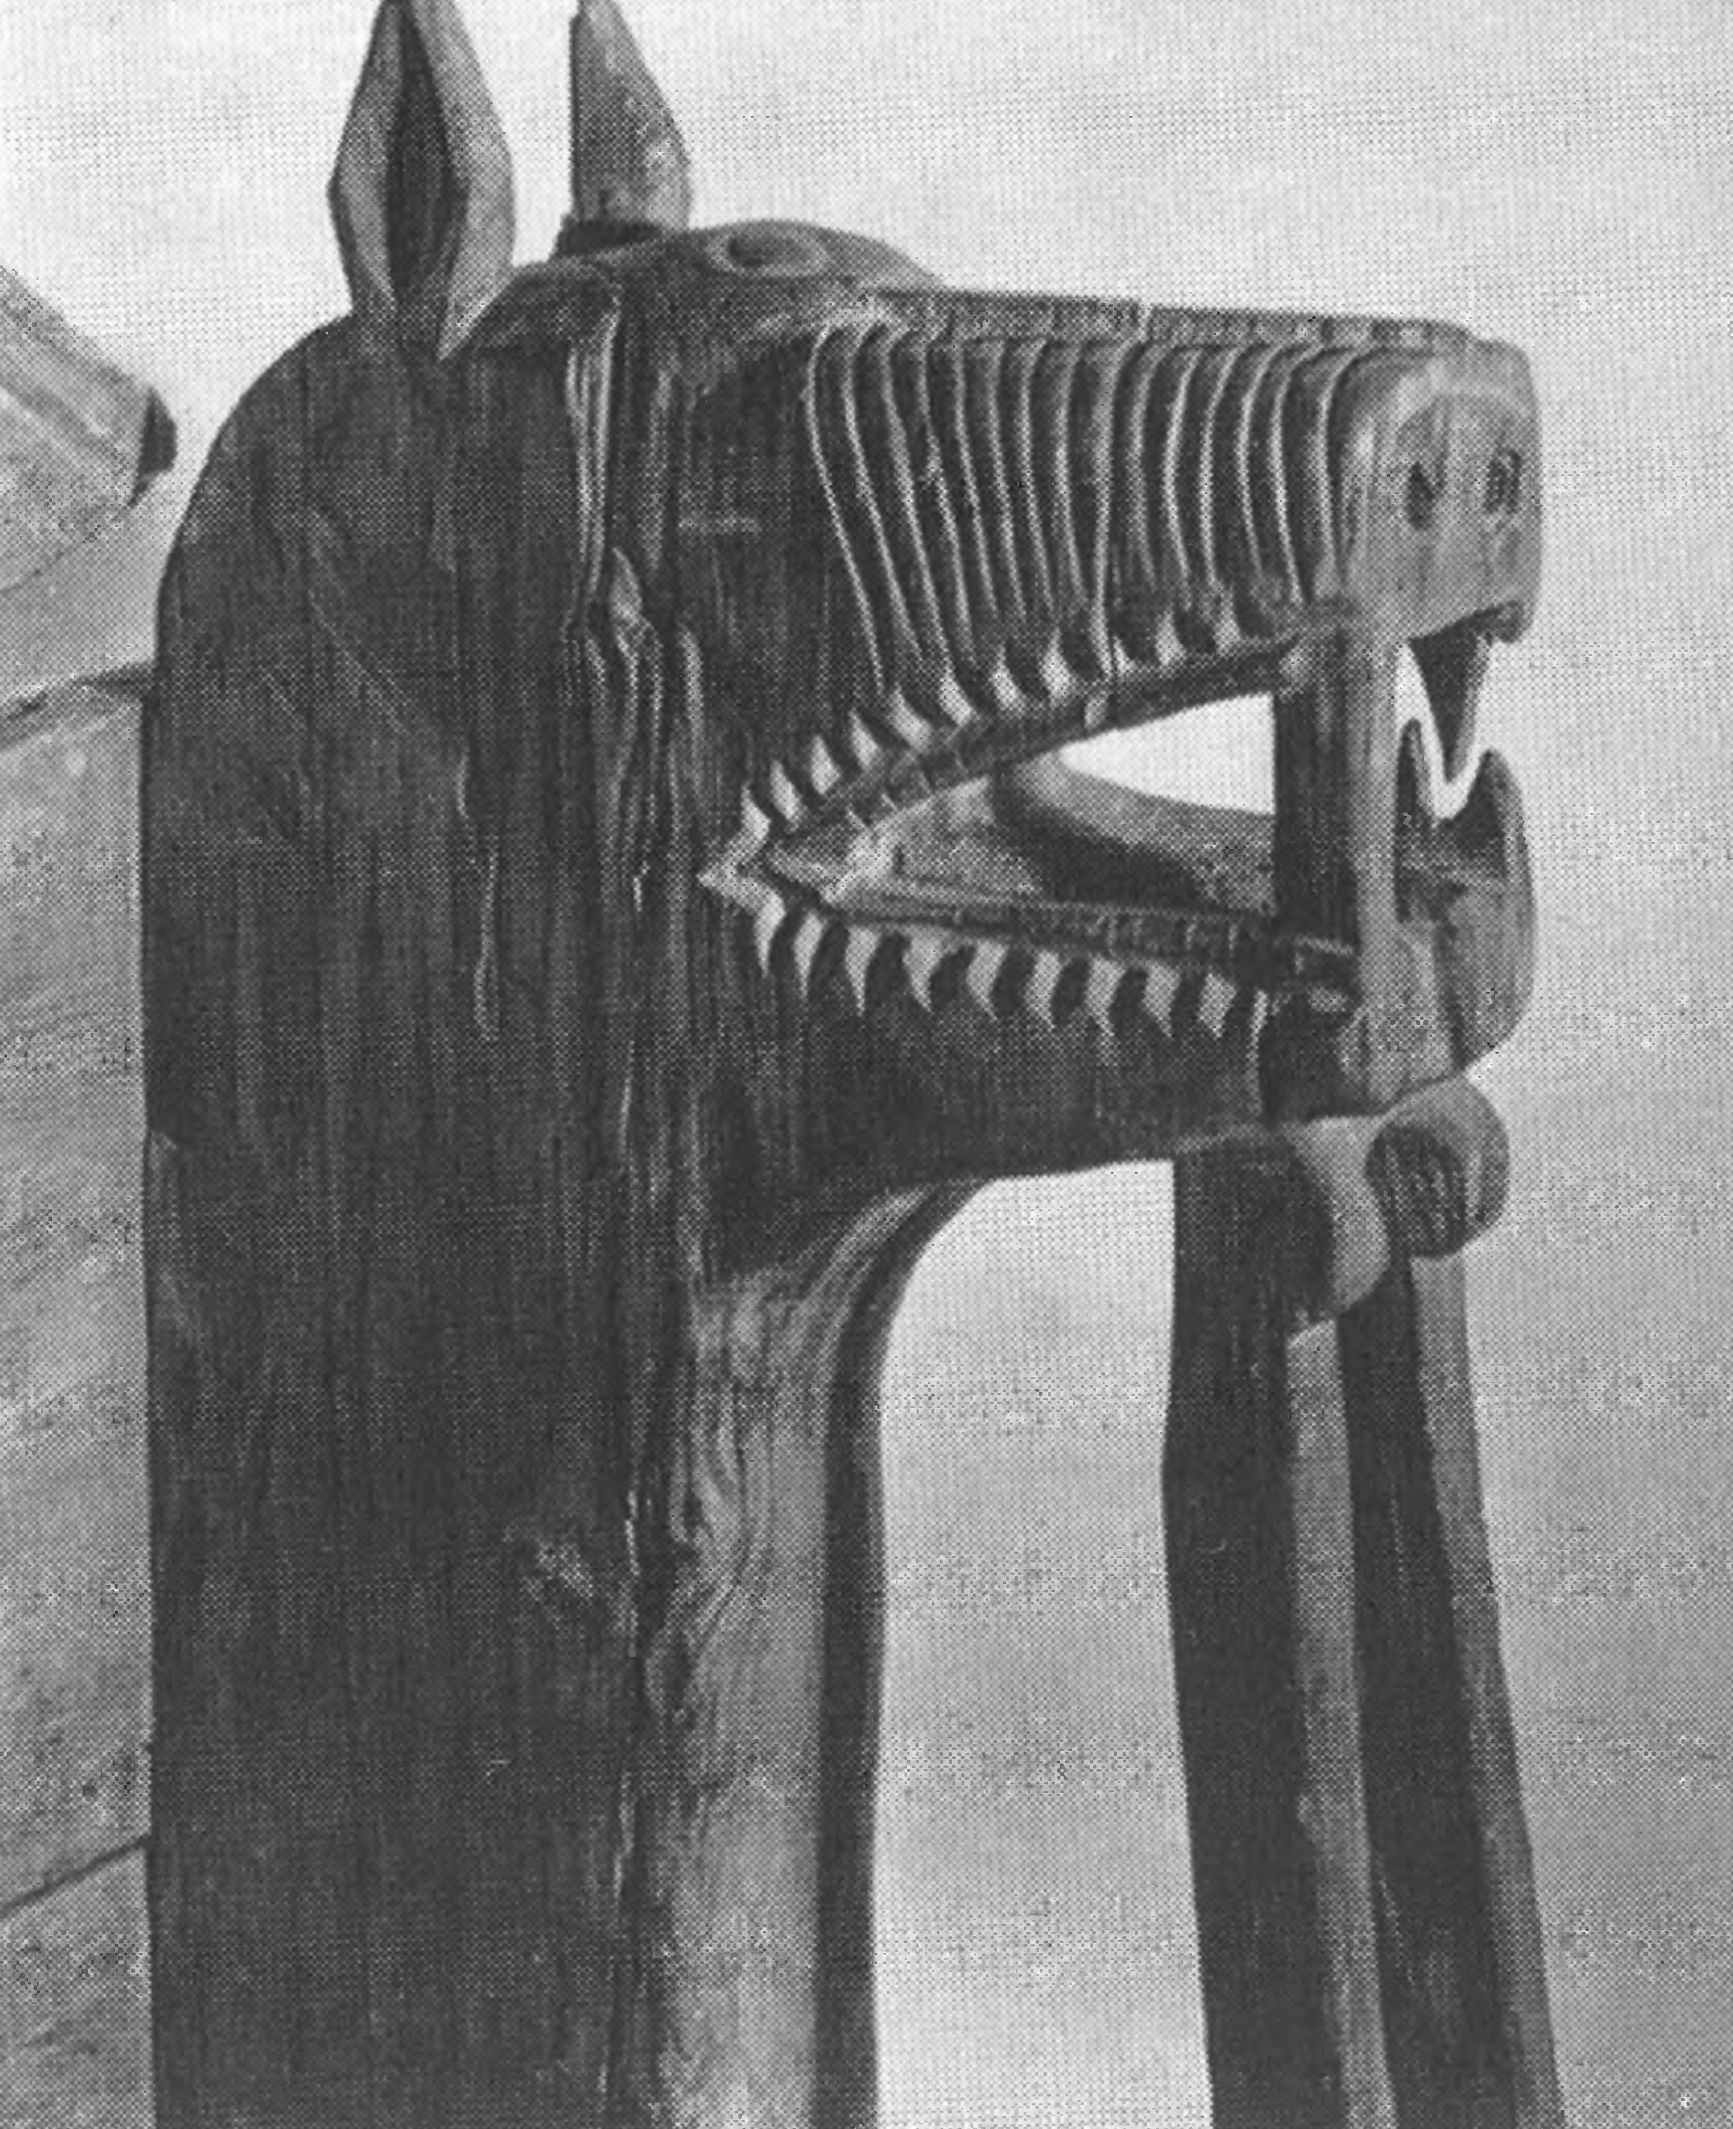 Подлокотник кресла в виде головы лошади. В таких же креслах восседали в древних скандинавских храмах могучие конунги (Музей декоративно-прикладного искусства)